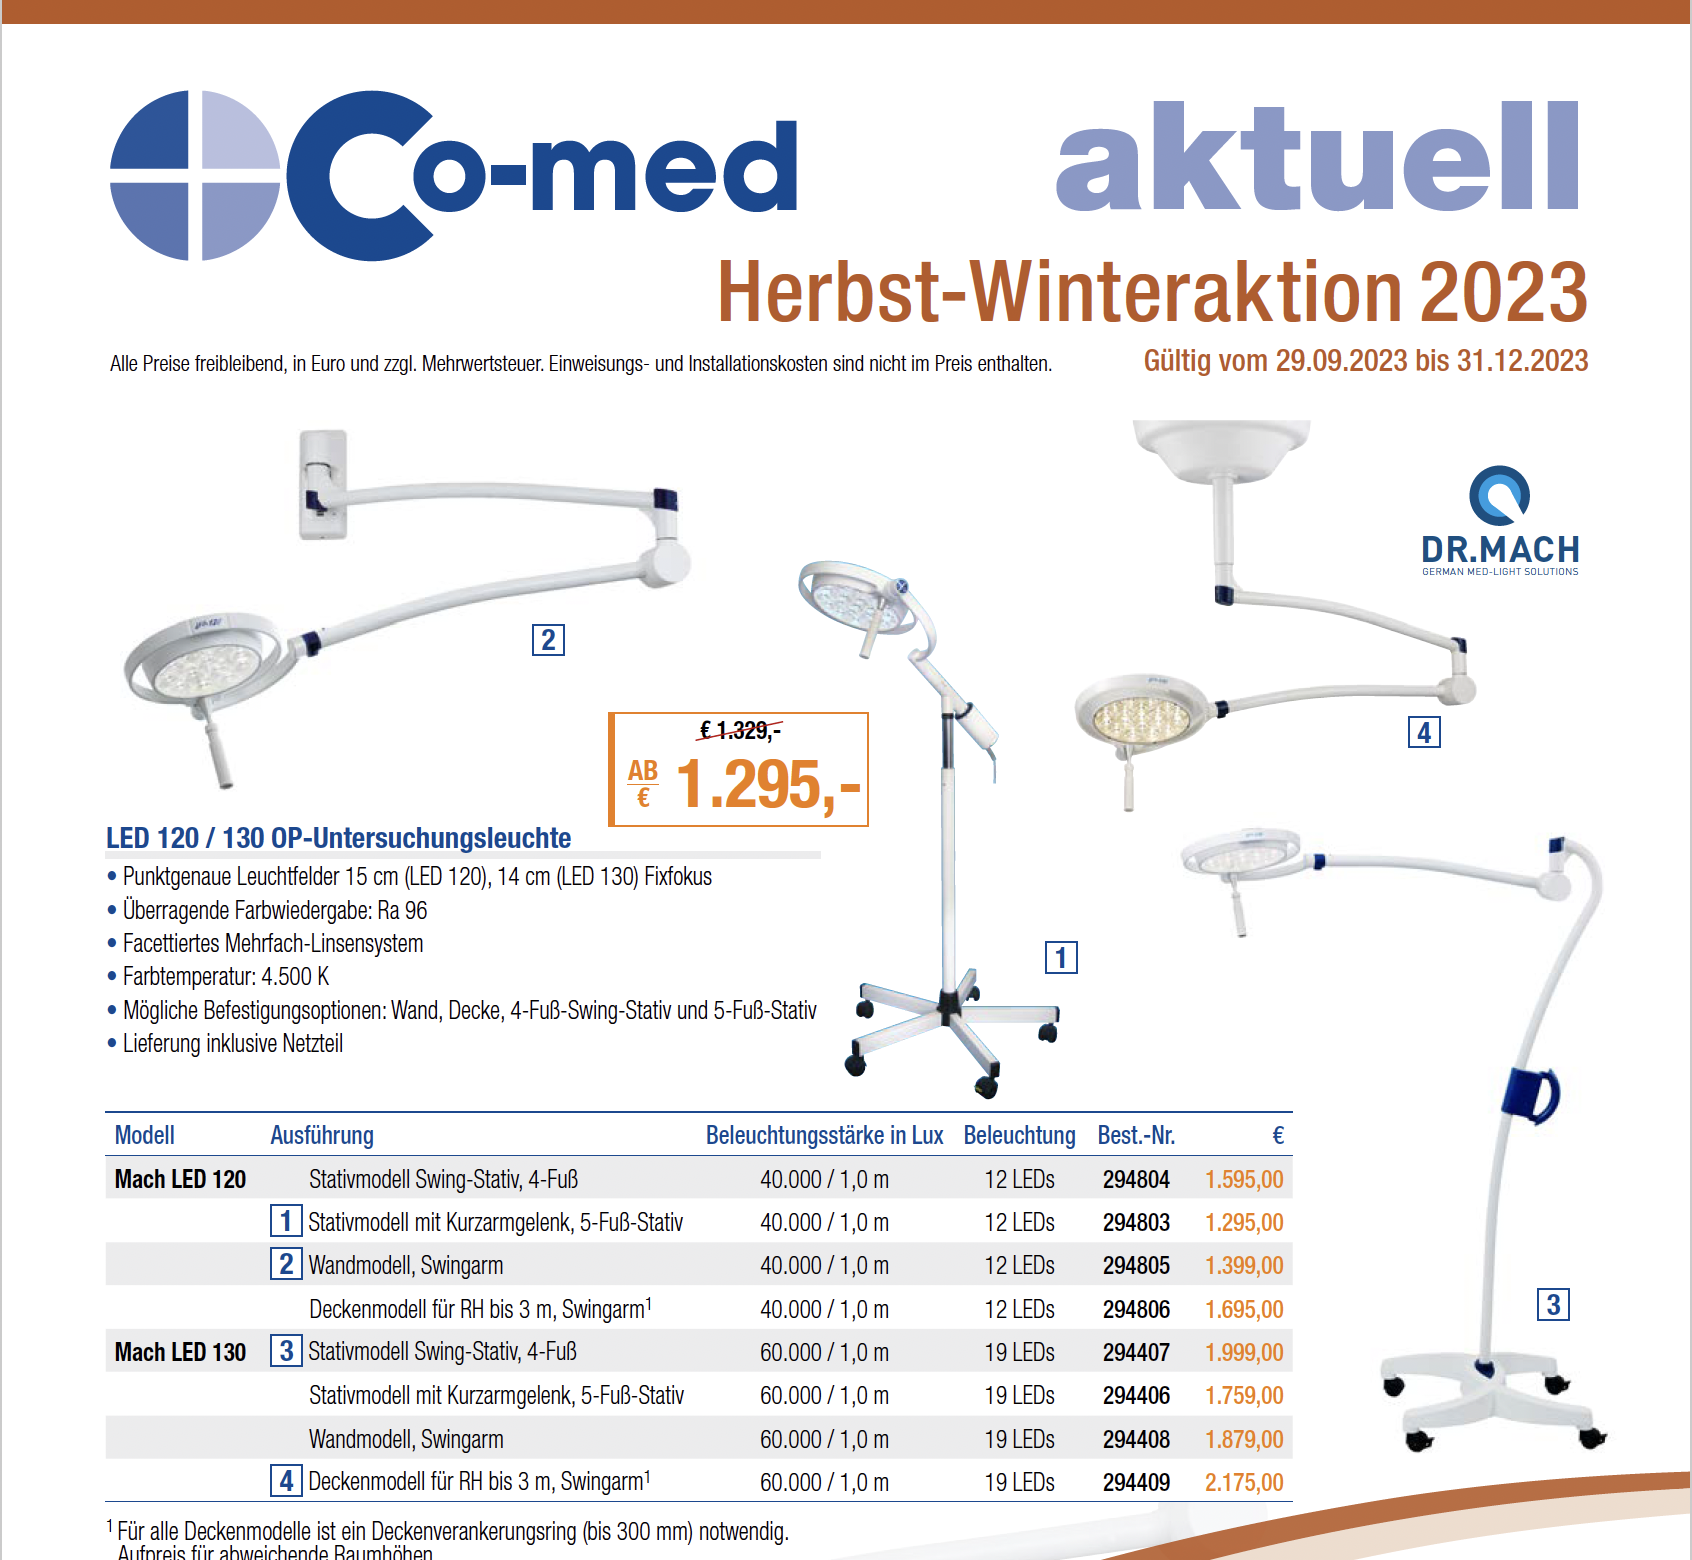 Co-med Aktuell HERBST-WINTERAKTION 02/2023